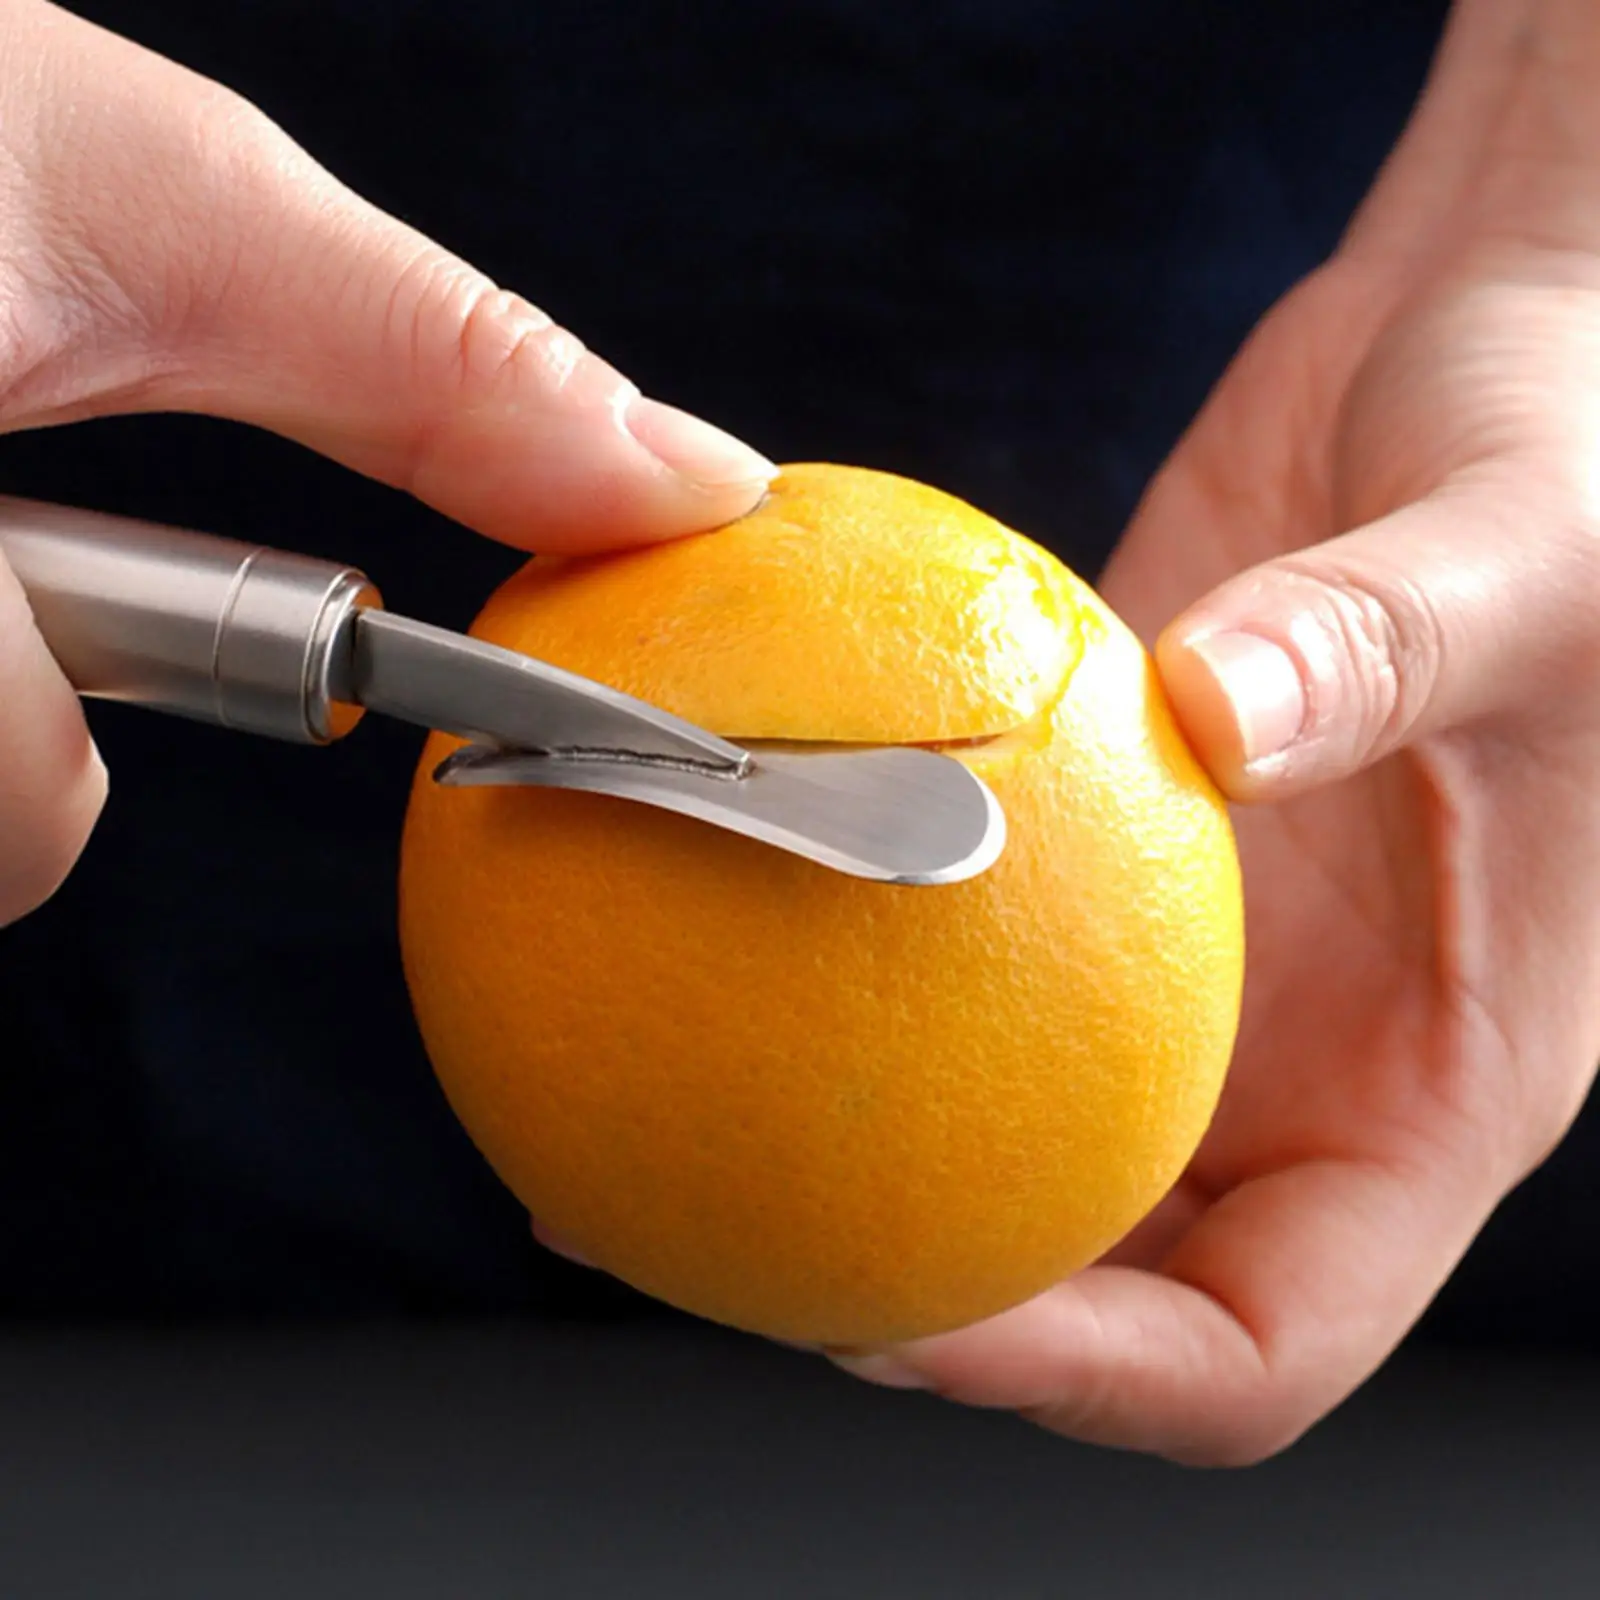 Stainless Steel Orange Peel Removal Grapefruit Opener Practical Fruit Opener Lemon Peel Cutter Slicer for Kitchen Home